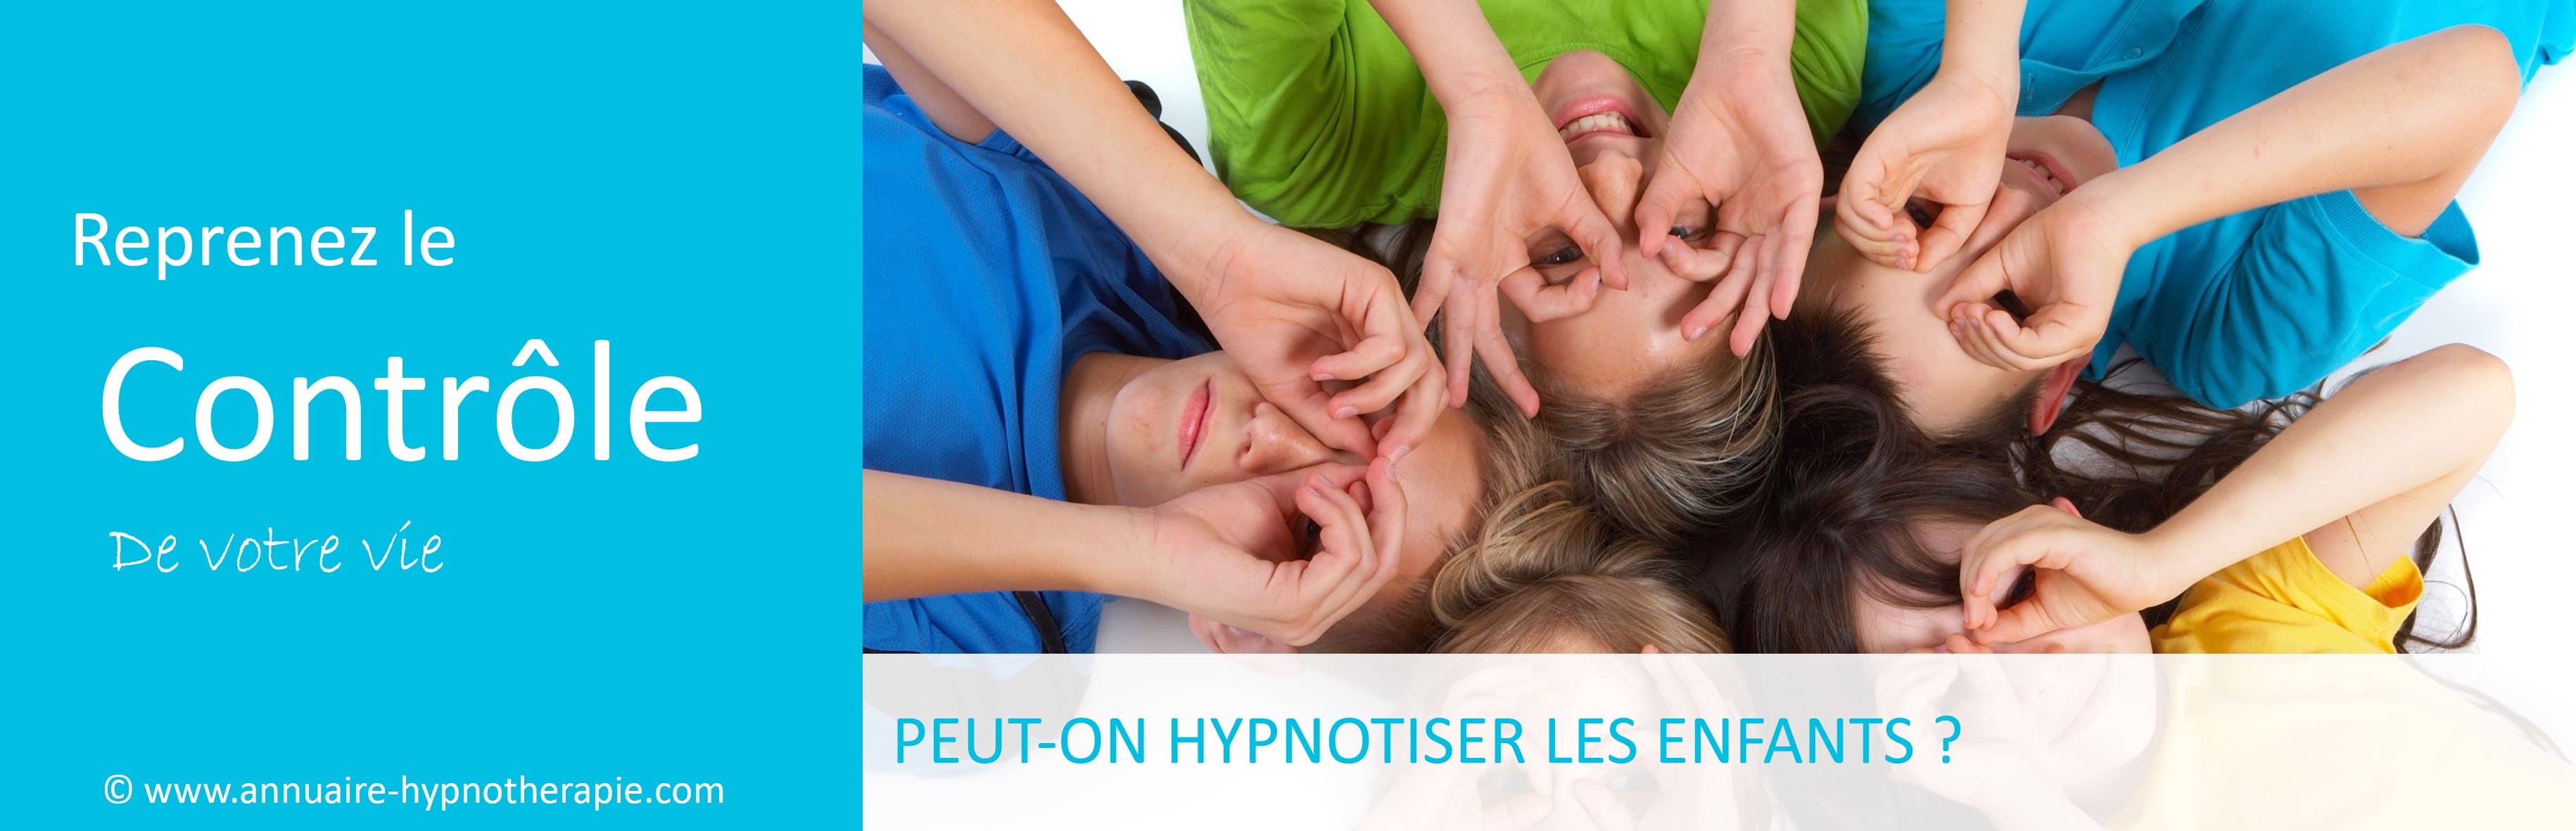 hypnotiser les enfants